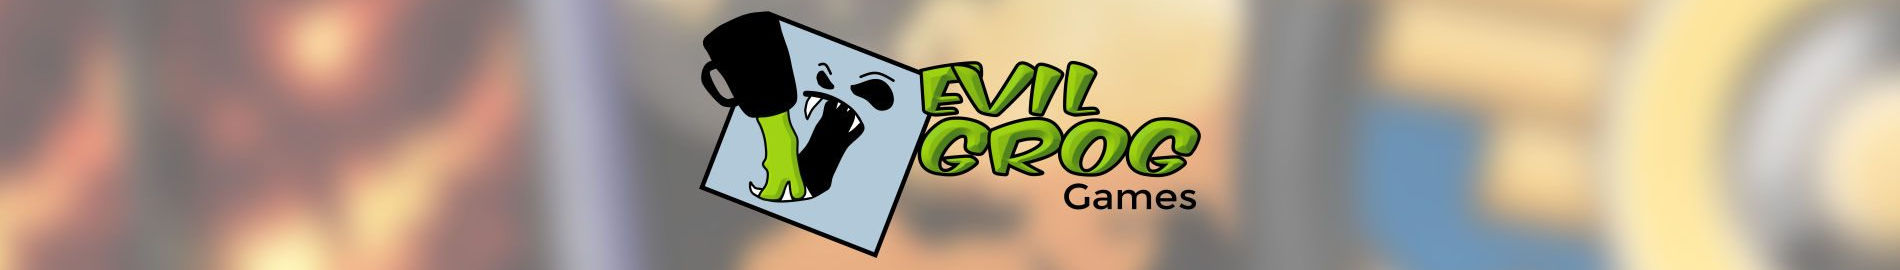 Evil Grog Games